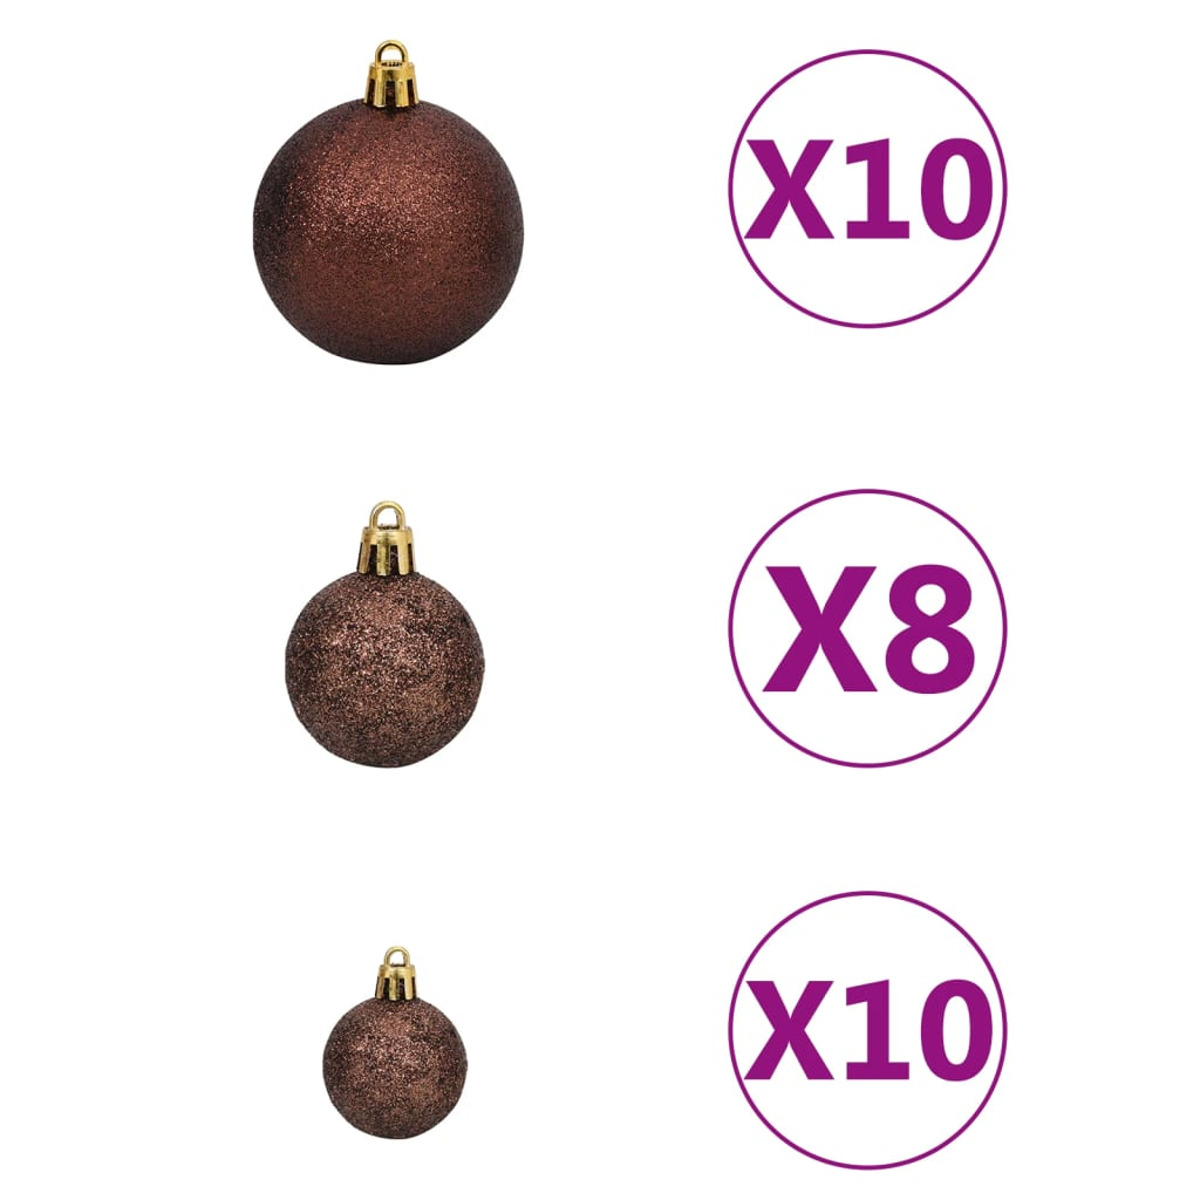 VIDAXL 3210377 Weihnachtsbaum